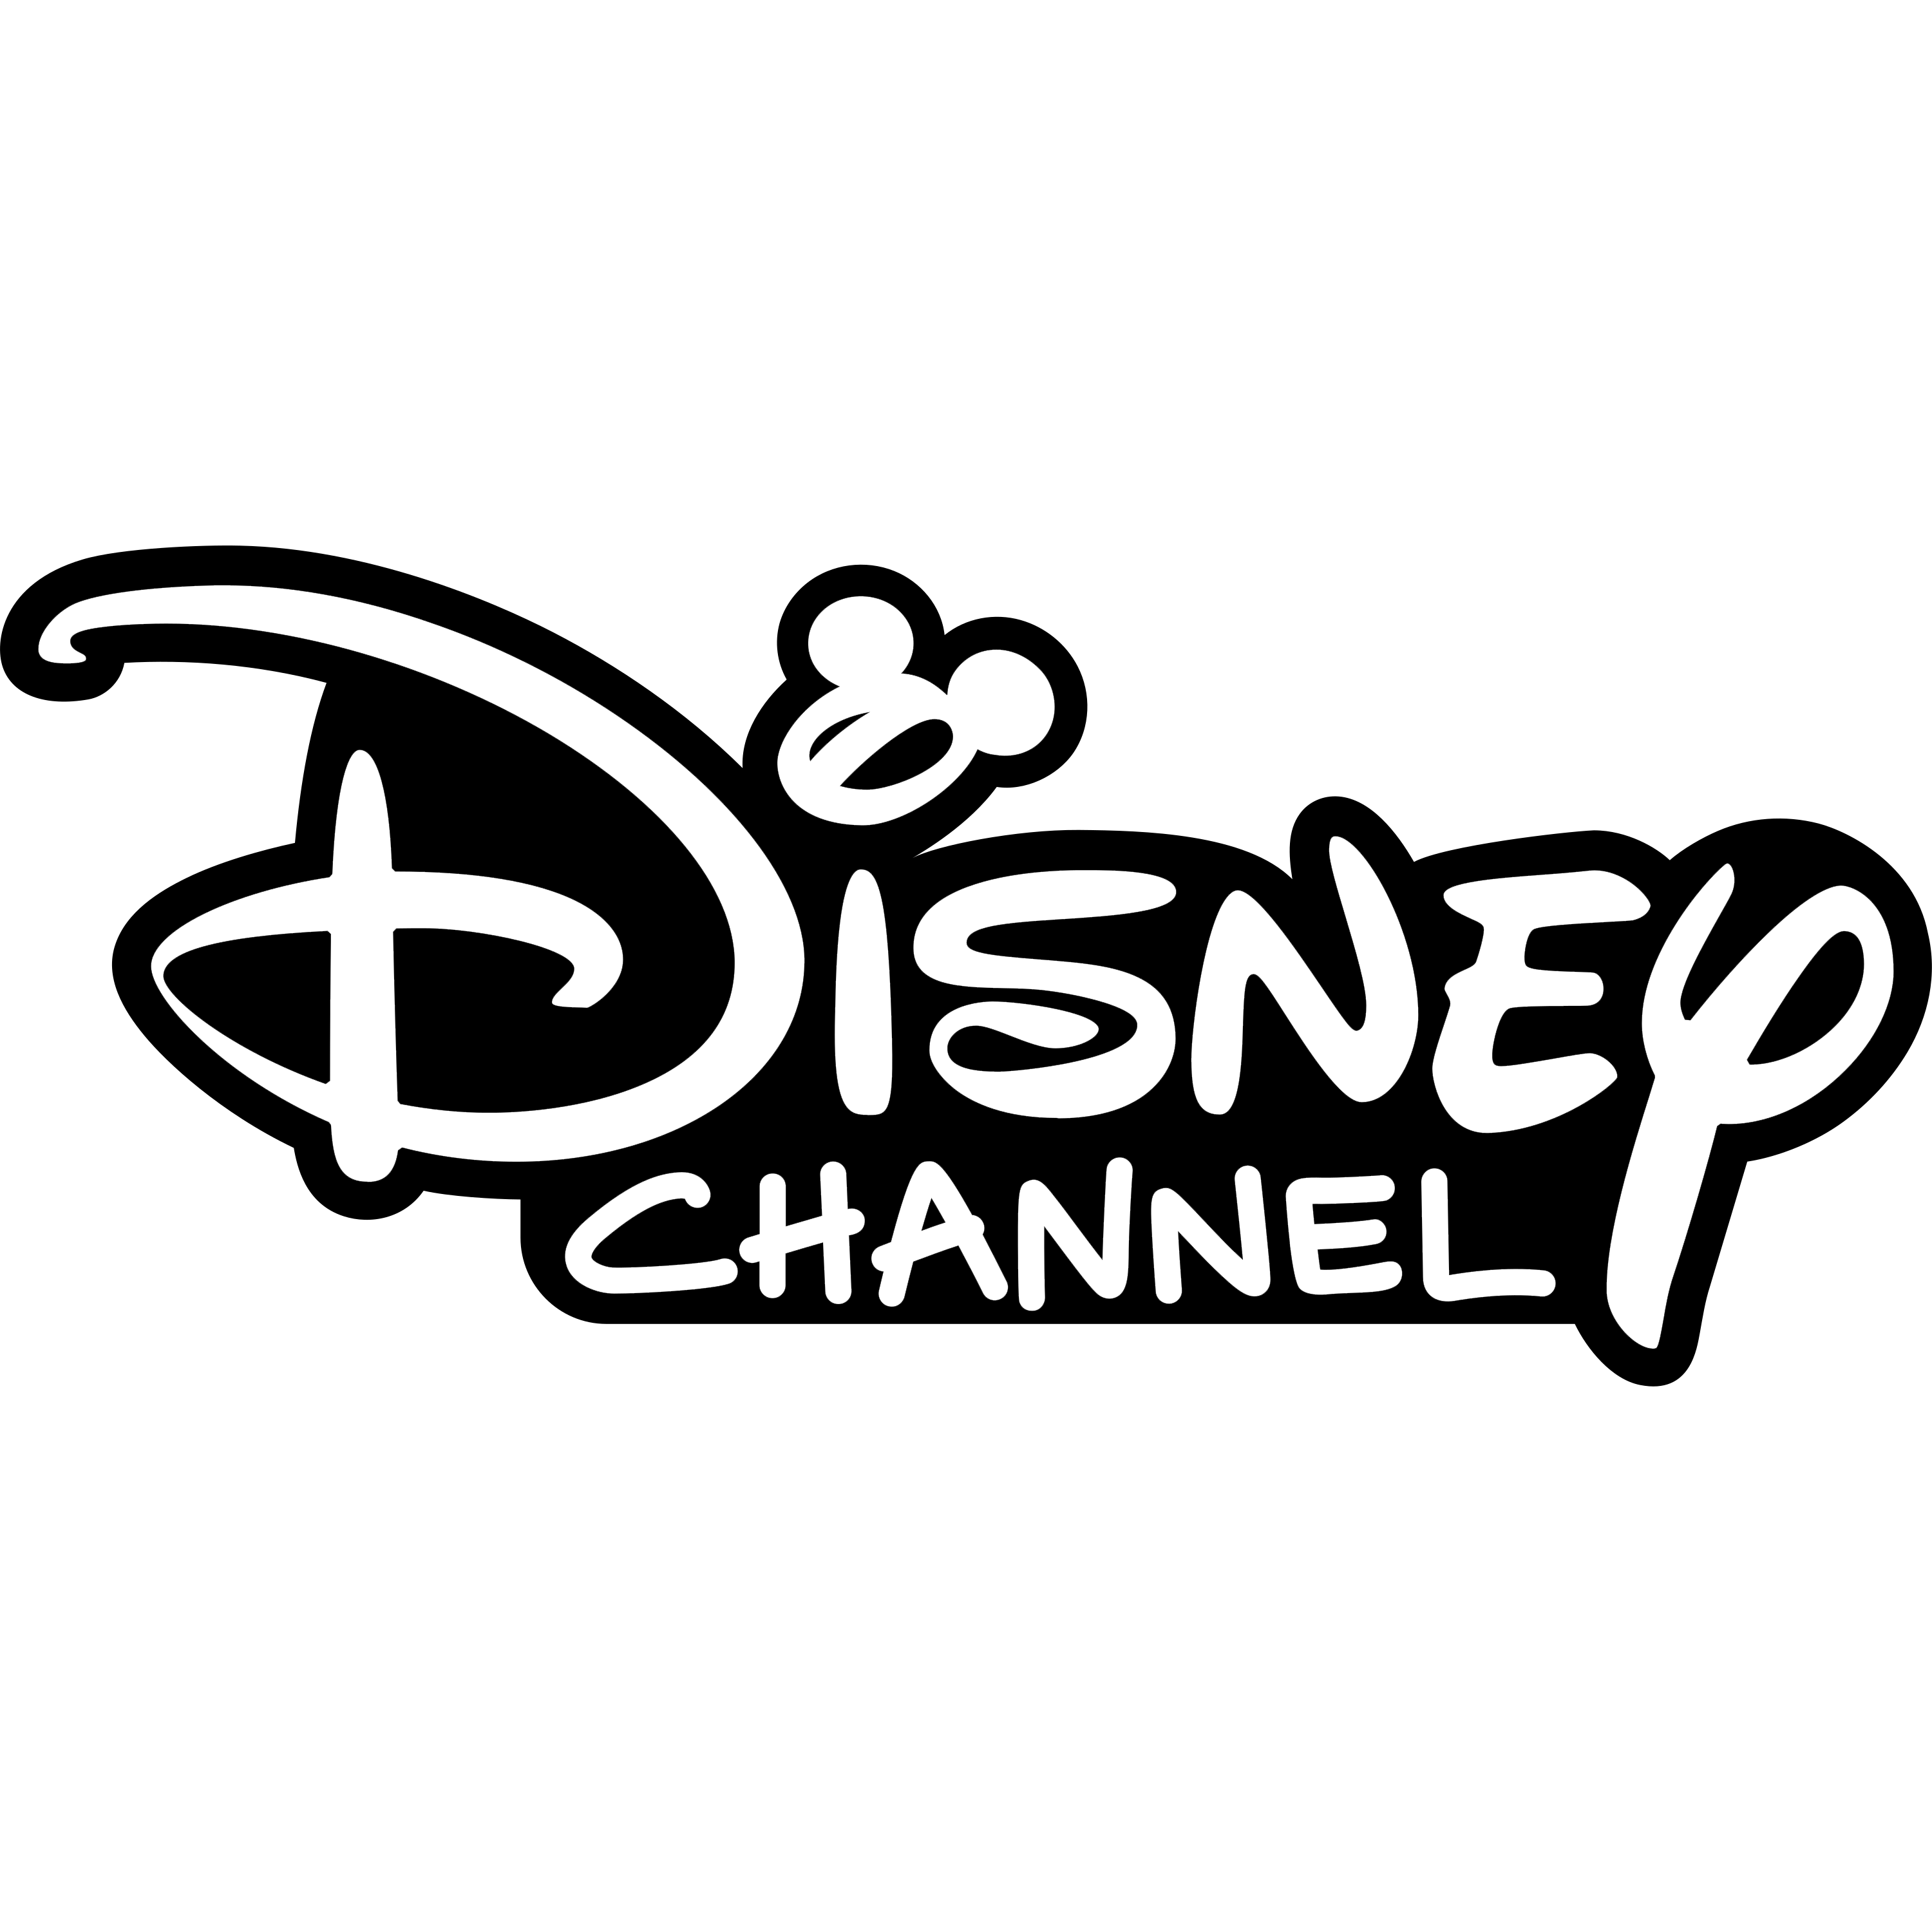 Disney Channel Logo Transparent Clipart